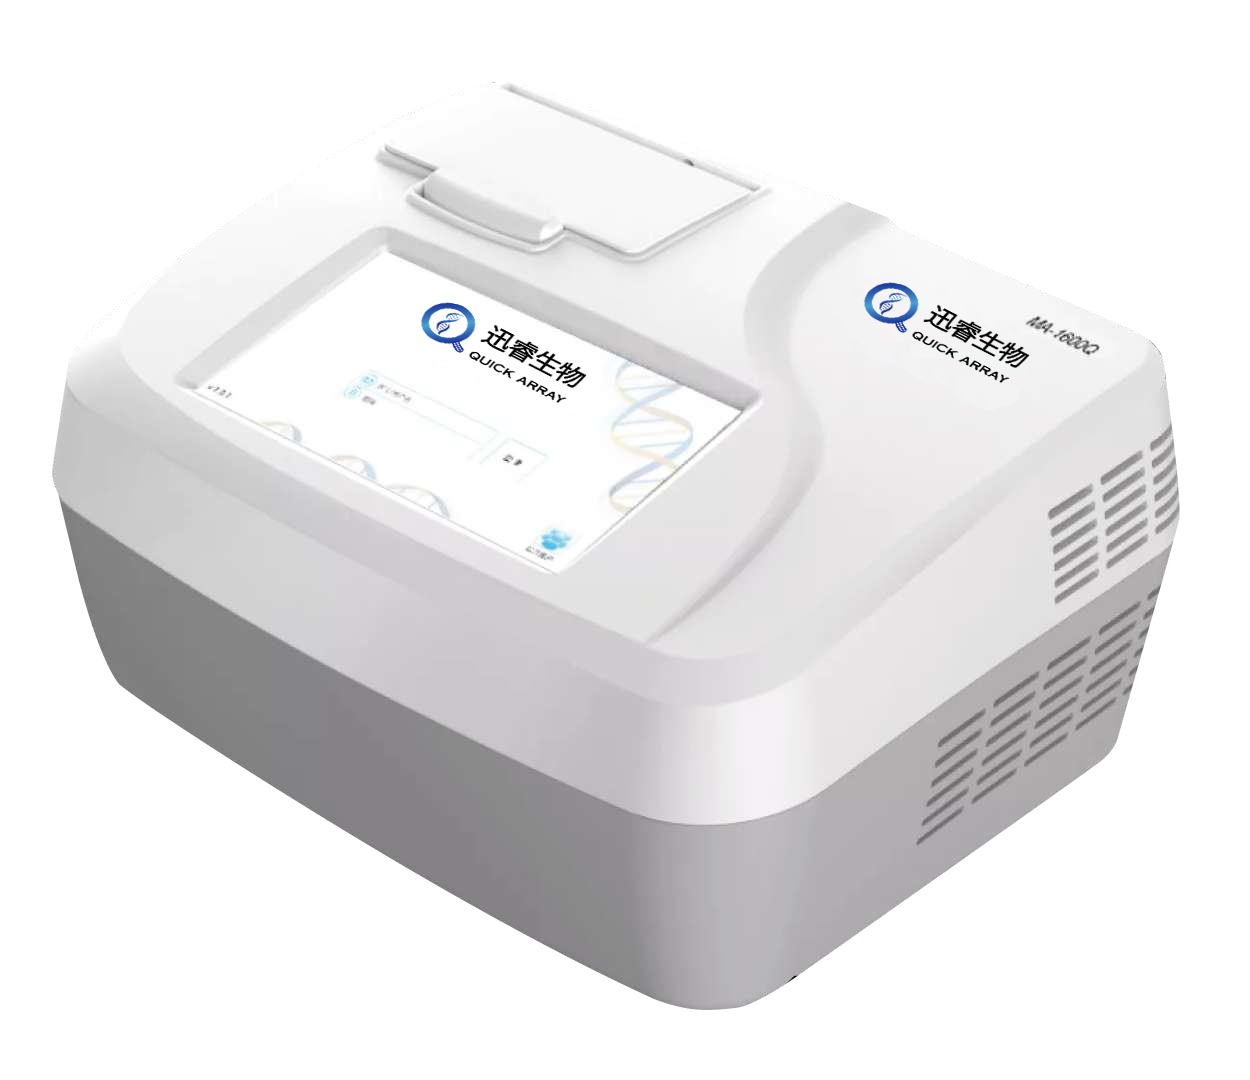 【雅睿生物】MA-1600Q系列便携式实时荧光定量PCR仪